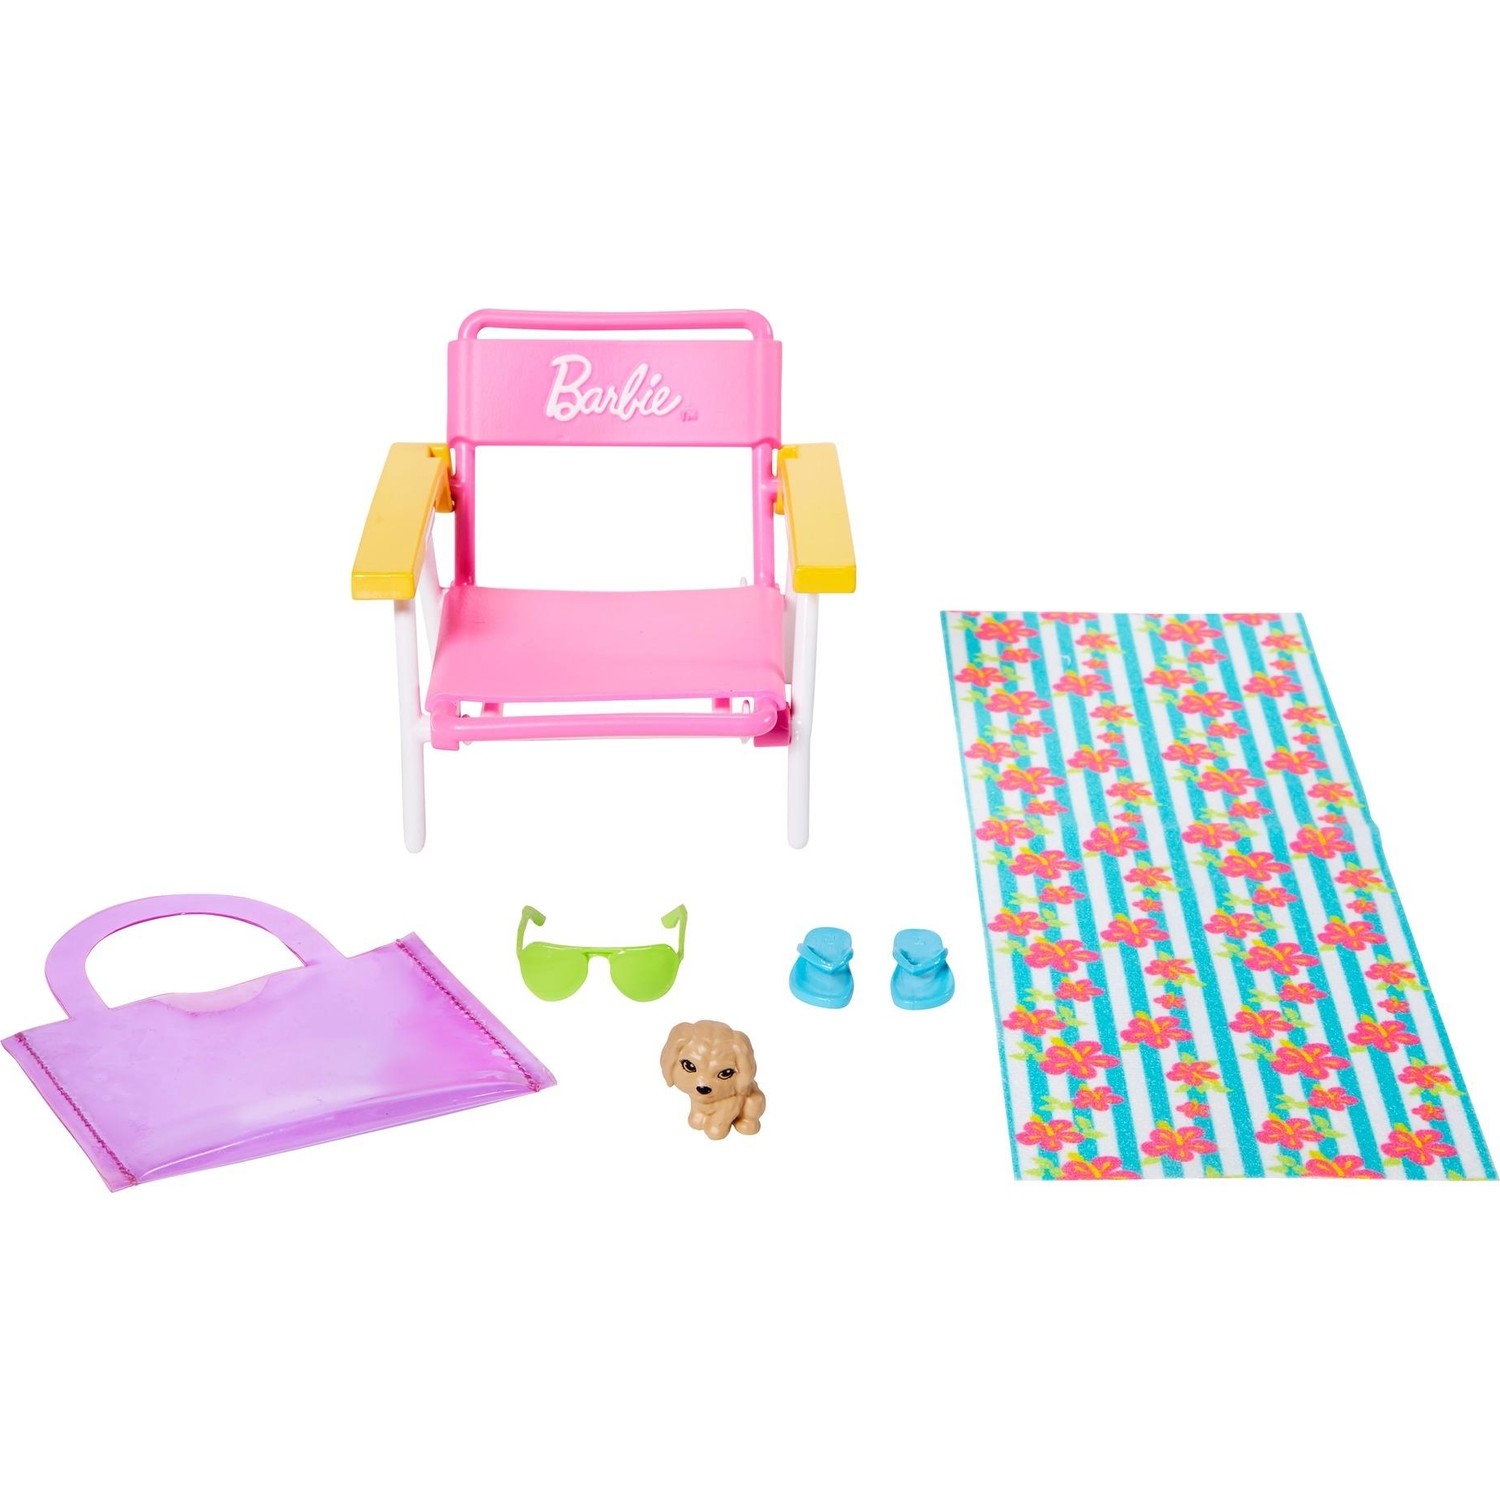 Игровой набор Barbie Home Accessory Packs GRG56 дополнительные друзья питомцы barbie и наборы одежды hhf80